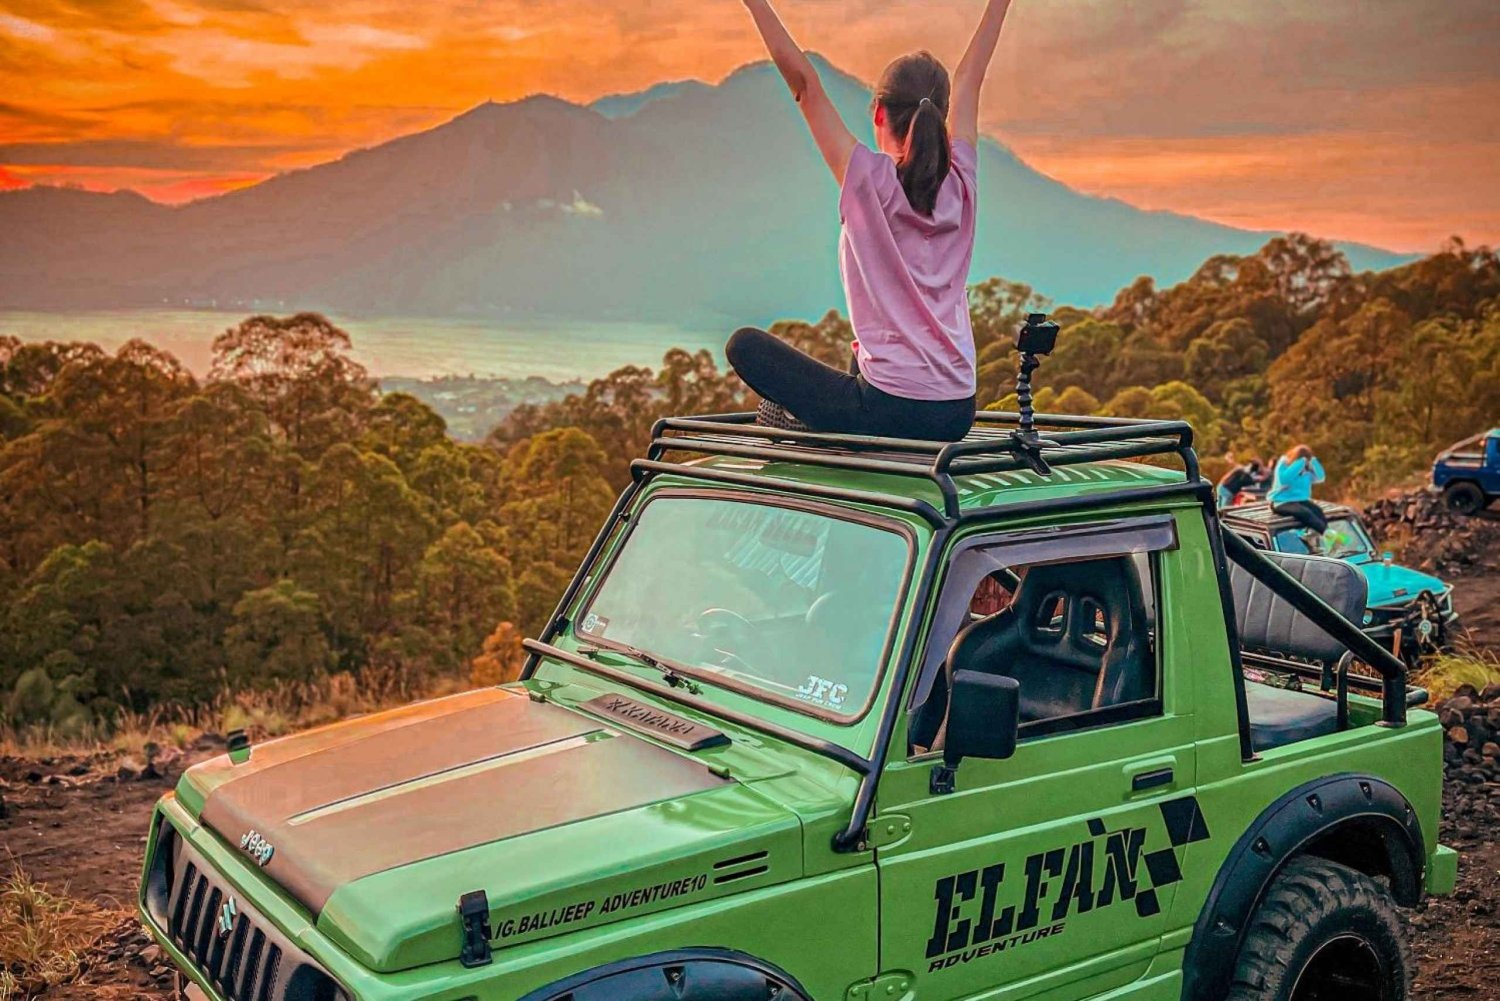 Ubud : Excursion en jeep au lever du soleil sur le Mont Batur et visite d'une source d'eau chaude naturelle